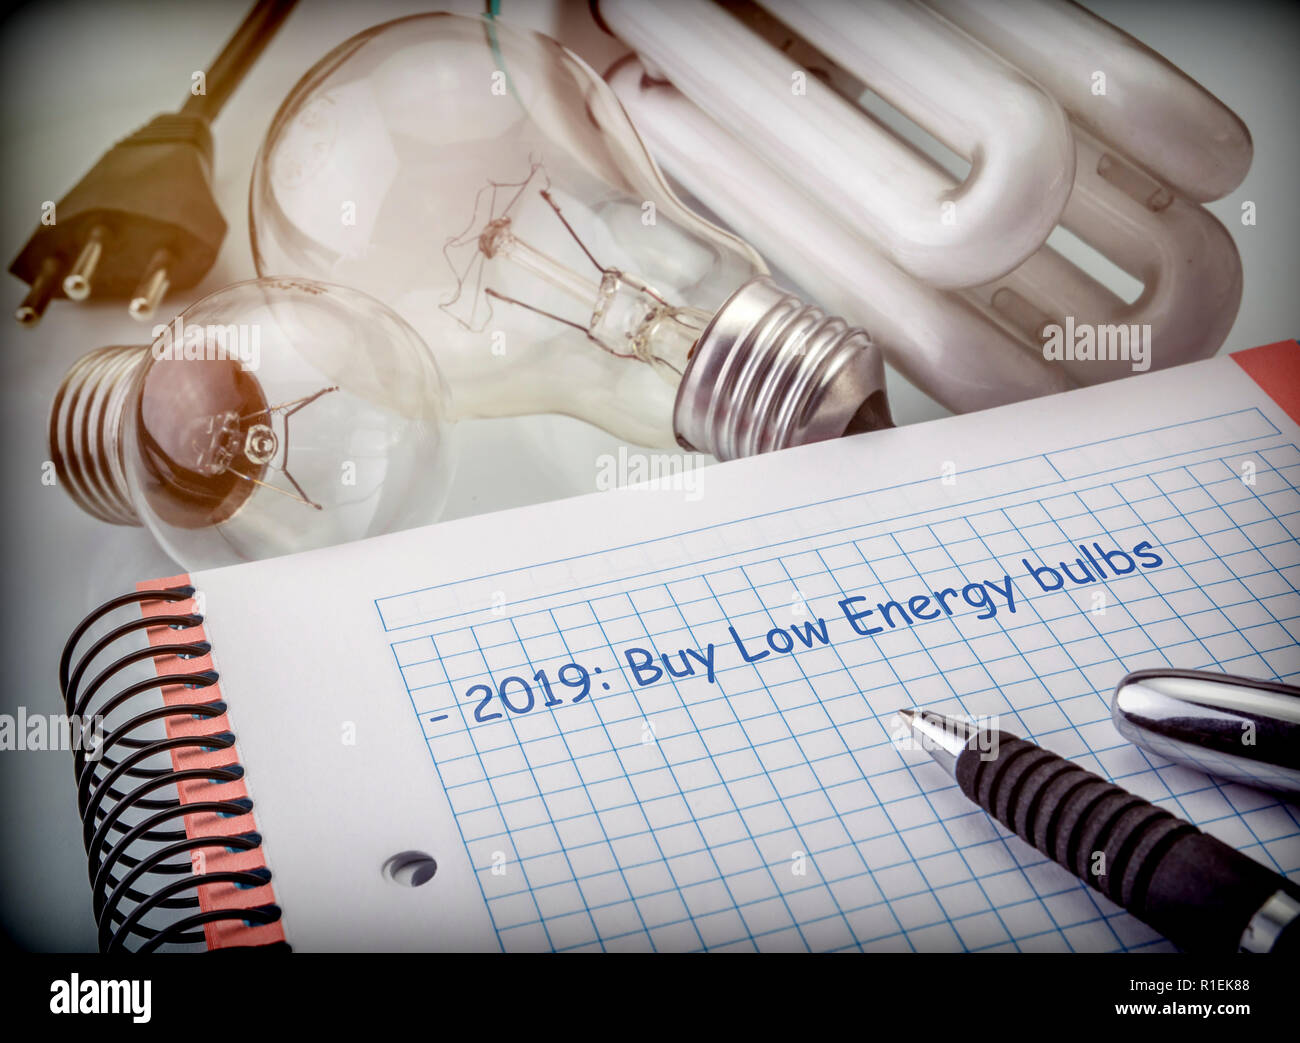 Ziele, die im nächsten Jahr zu speichern, den Energieverbrauch senken, kaufen Glühbirnen von niedrigen Verbrauch, konzeptionelle Bild Stockfoto